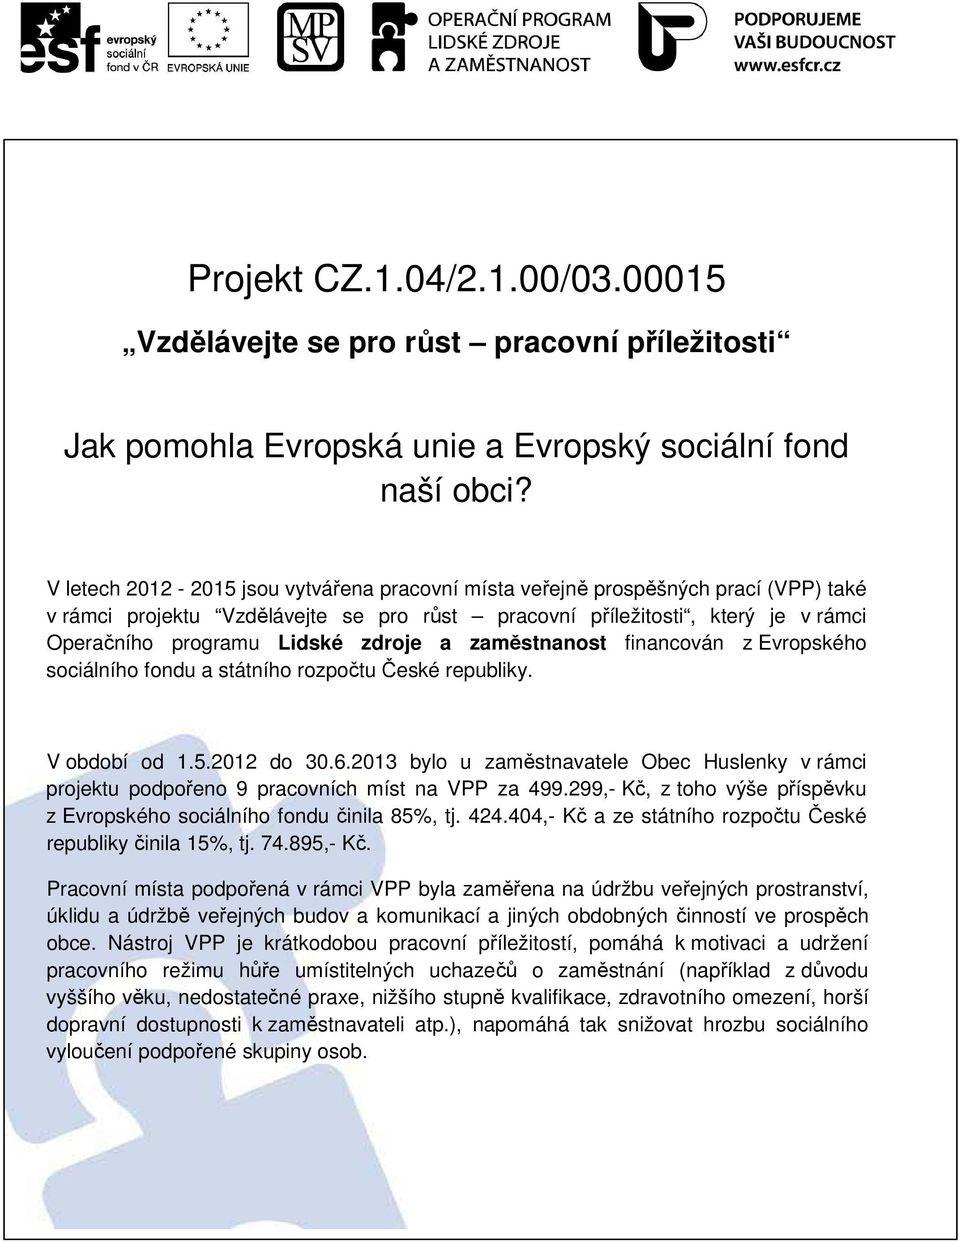 zdroje a zaměstnanost financován z Evropského sociálního fondu a státního rozpočtu České republiky. V období od 1.5.2012 do 30.6.